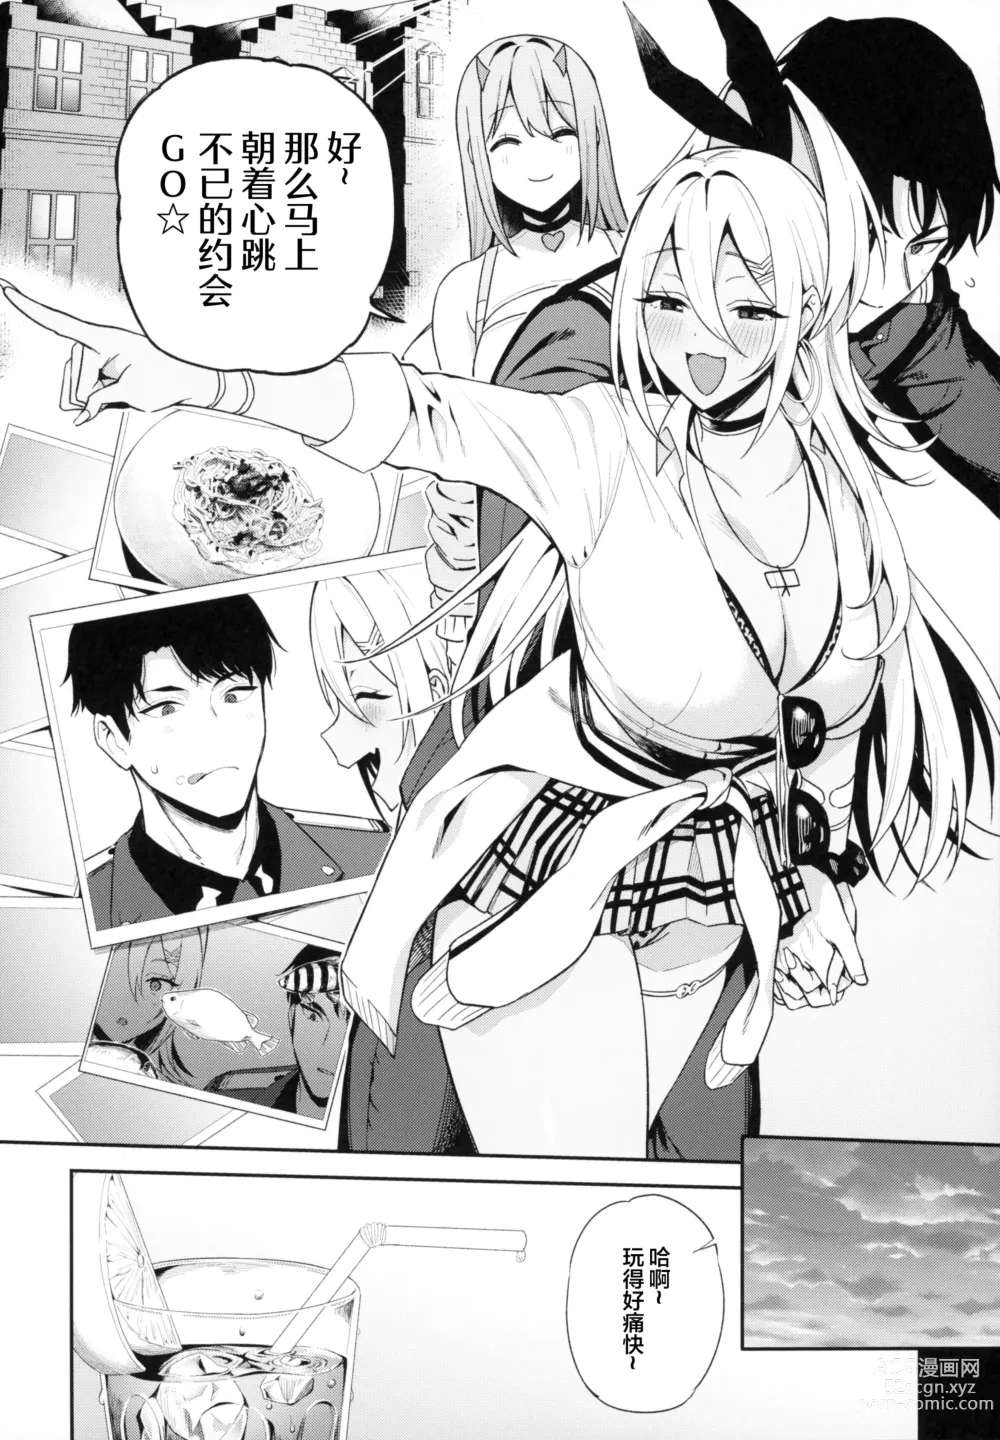 Page 5 of doujinshi Gals Showdown